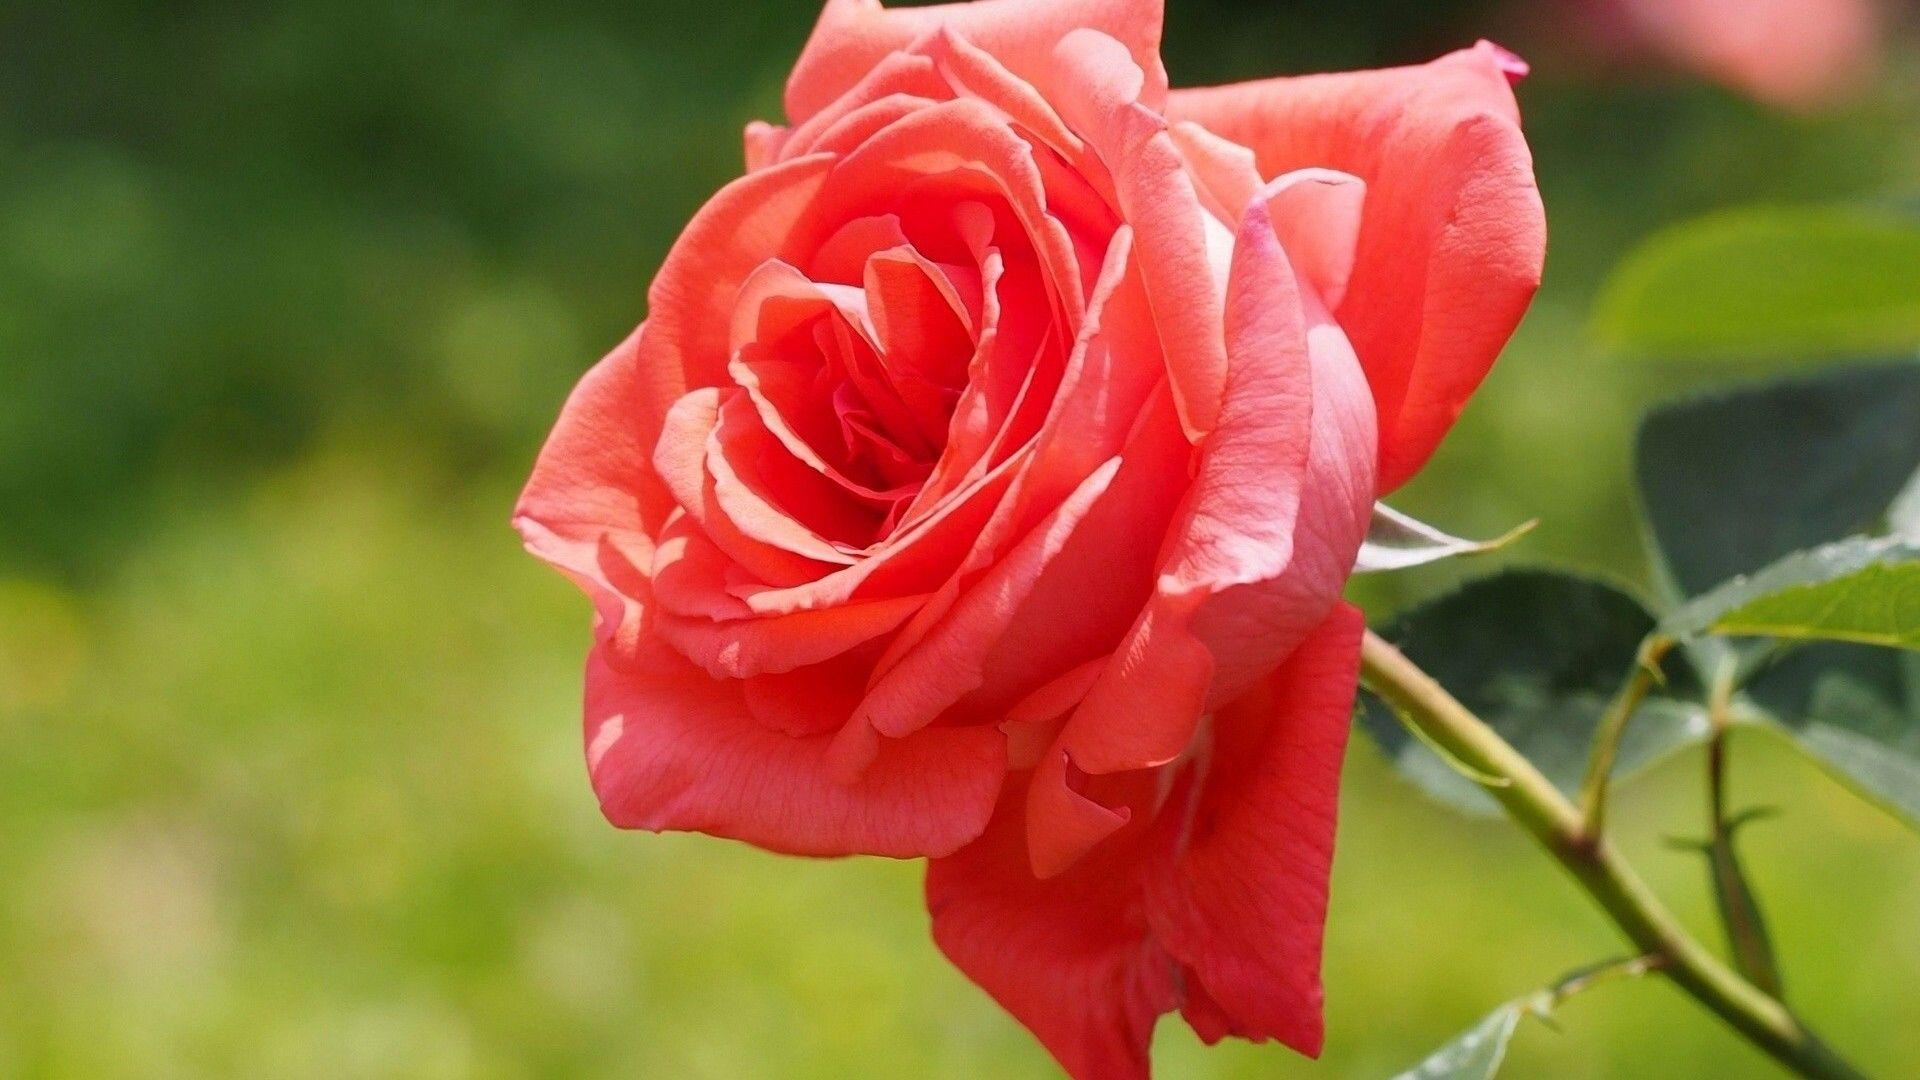 Full HD Of Knumathise Red Rose Flower Garden Wallpaper Very